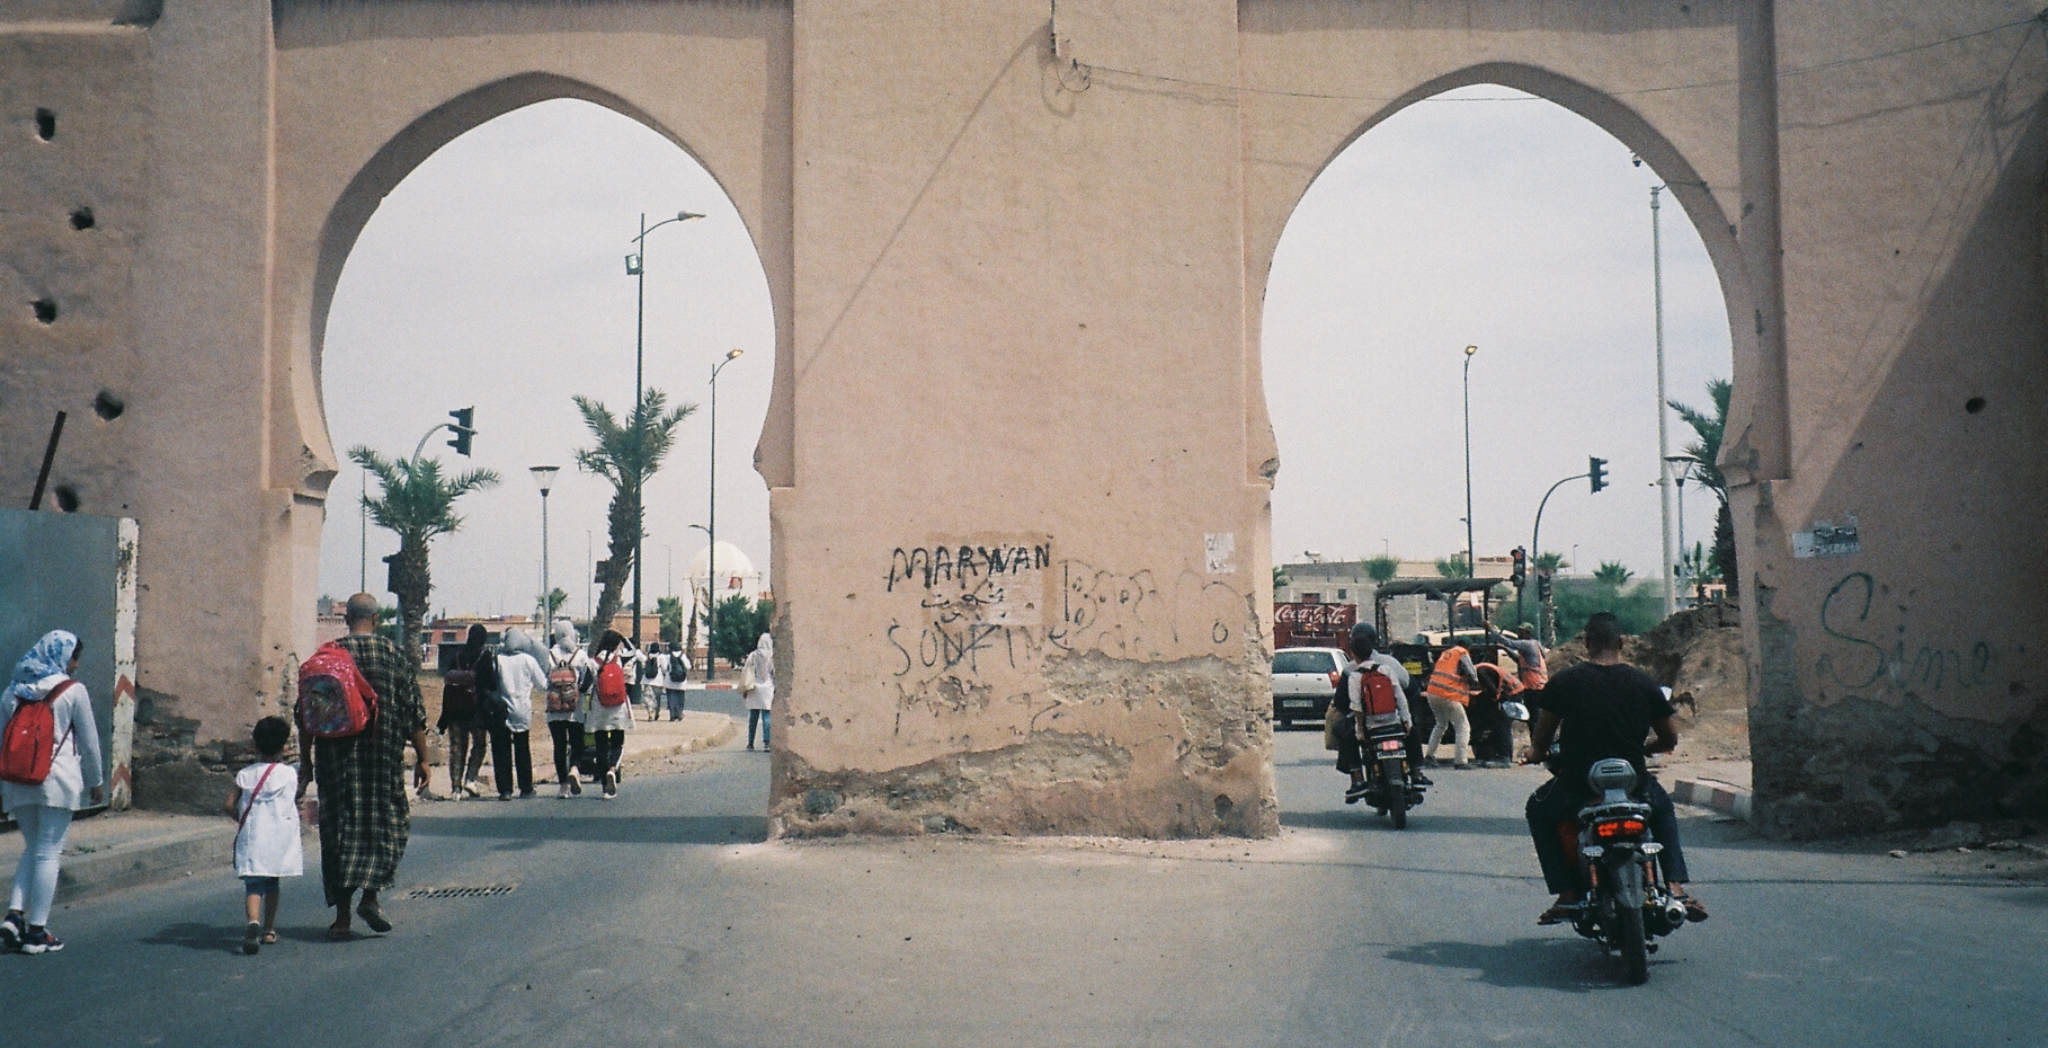 Morocco on film, gates into the Marrakech Medina